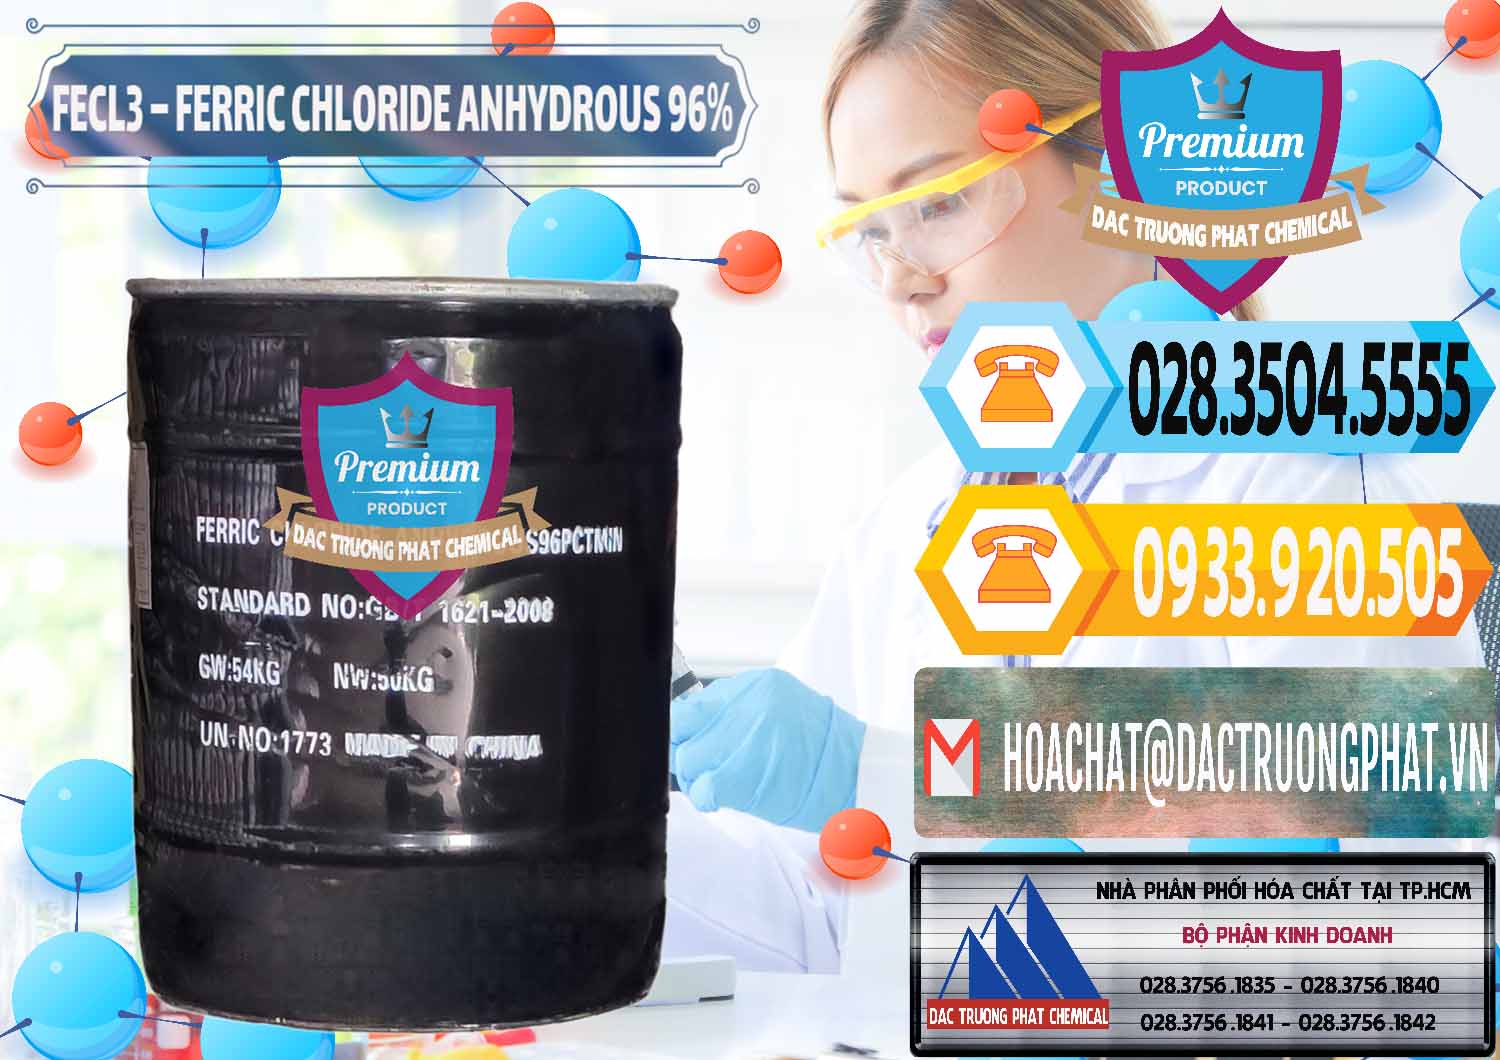 Nơi cung cấp _ bán FECL3 – Ferric Chloride Anhydrous 96% Trung Quốc China - 0065 - Đơn vị phân phối & cung cấp hóa chất tại TP.HCM - hoachattayrua.net